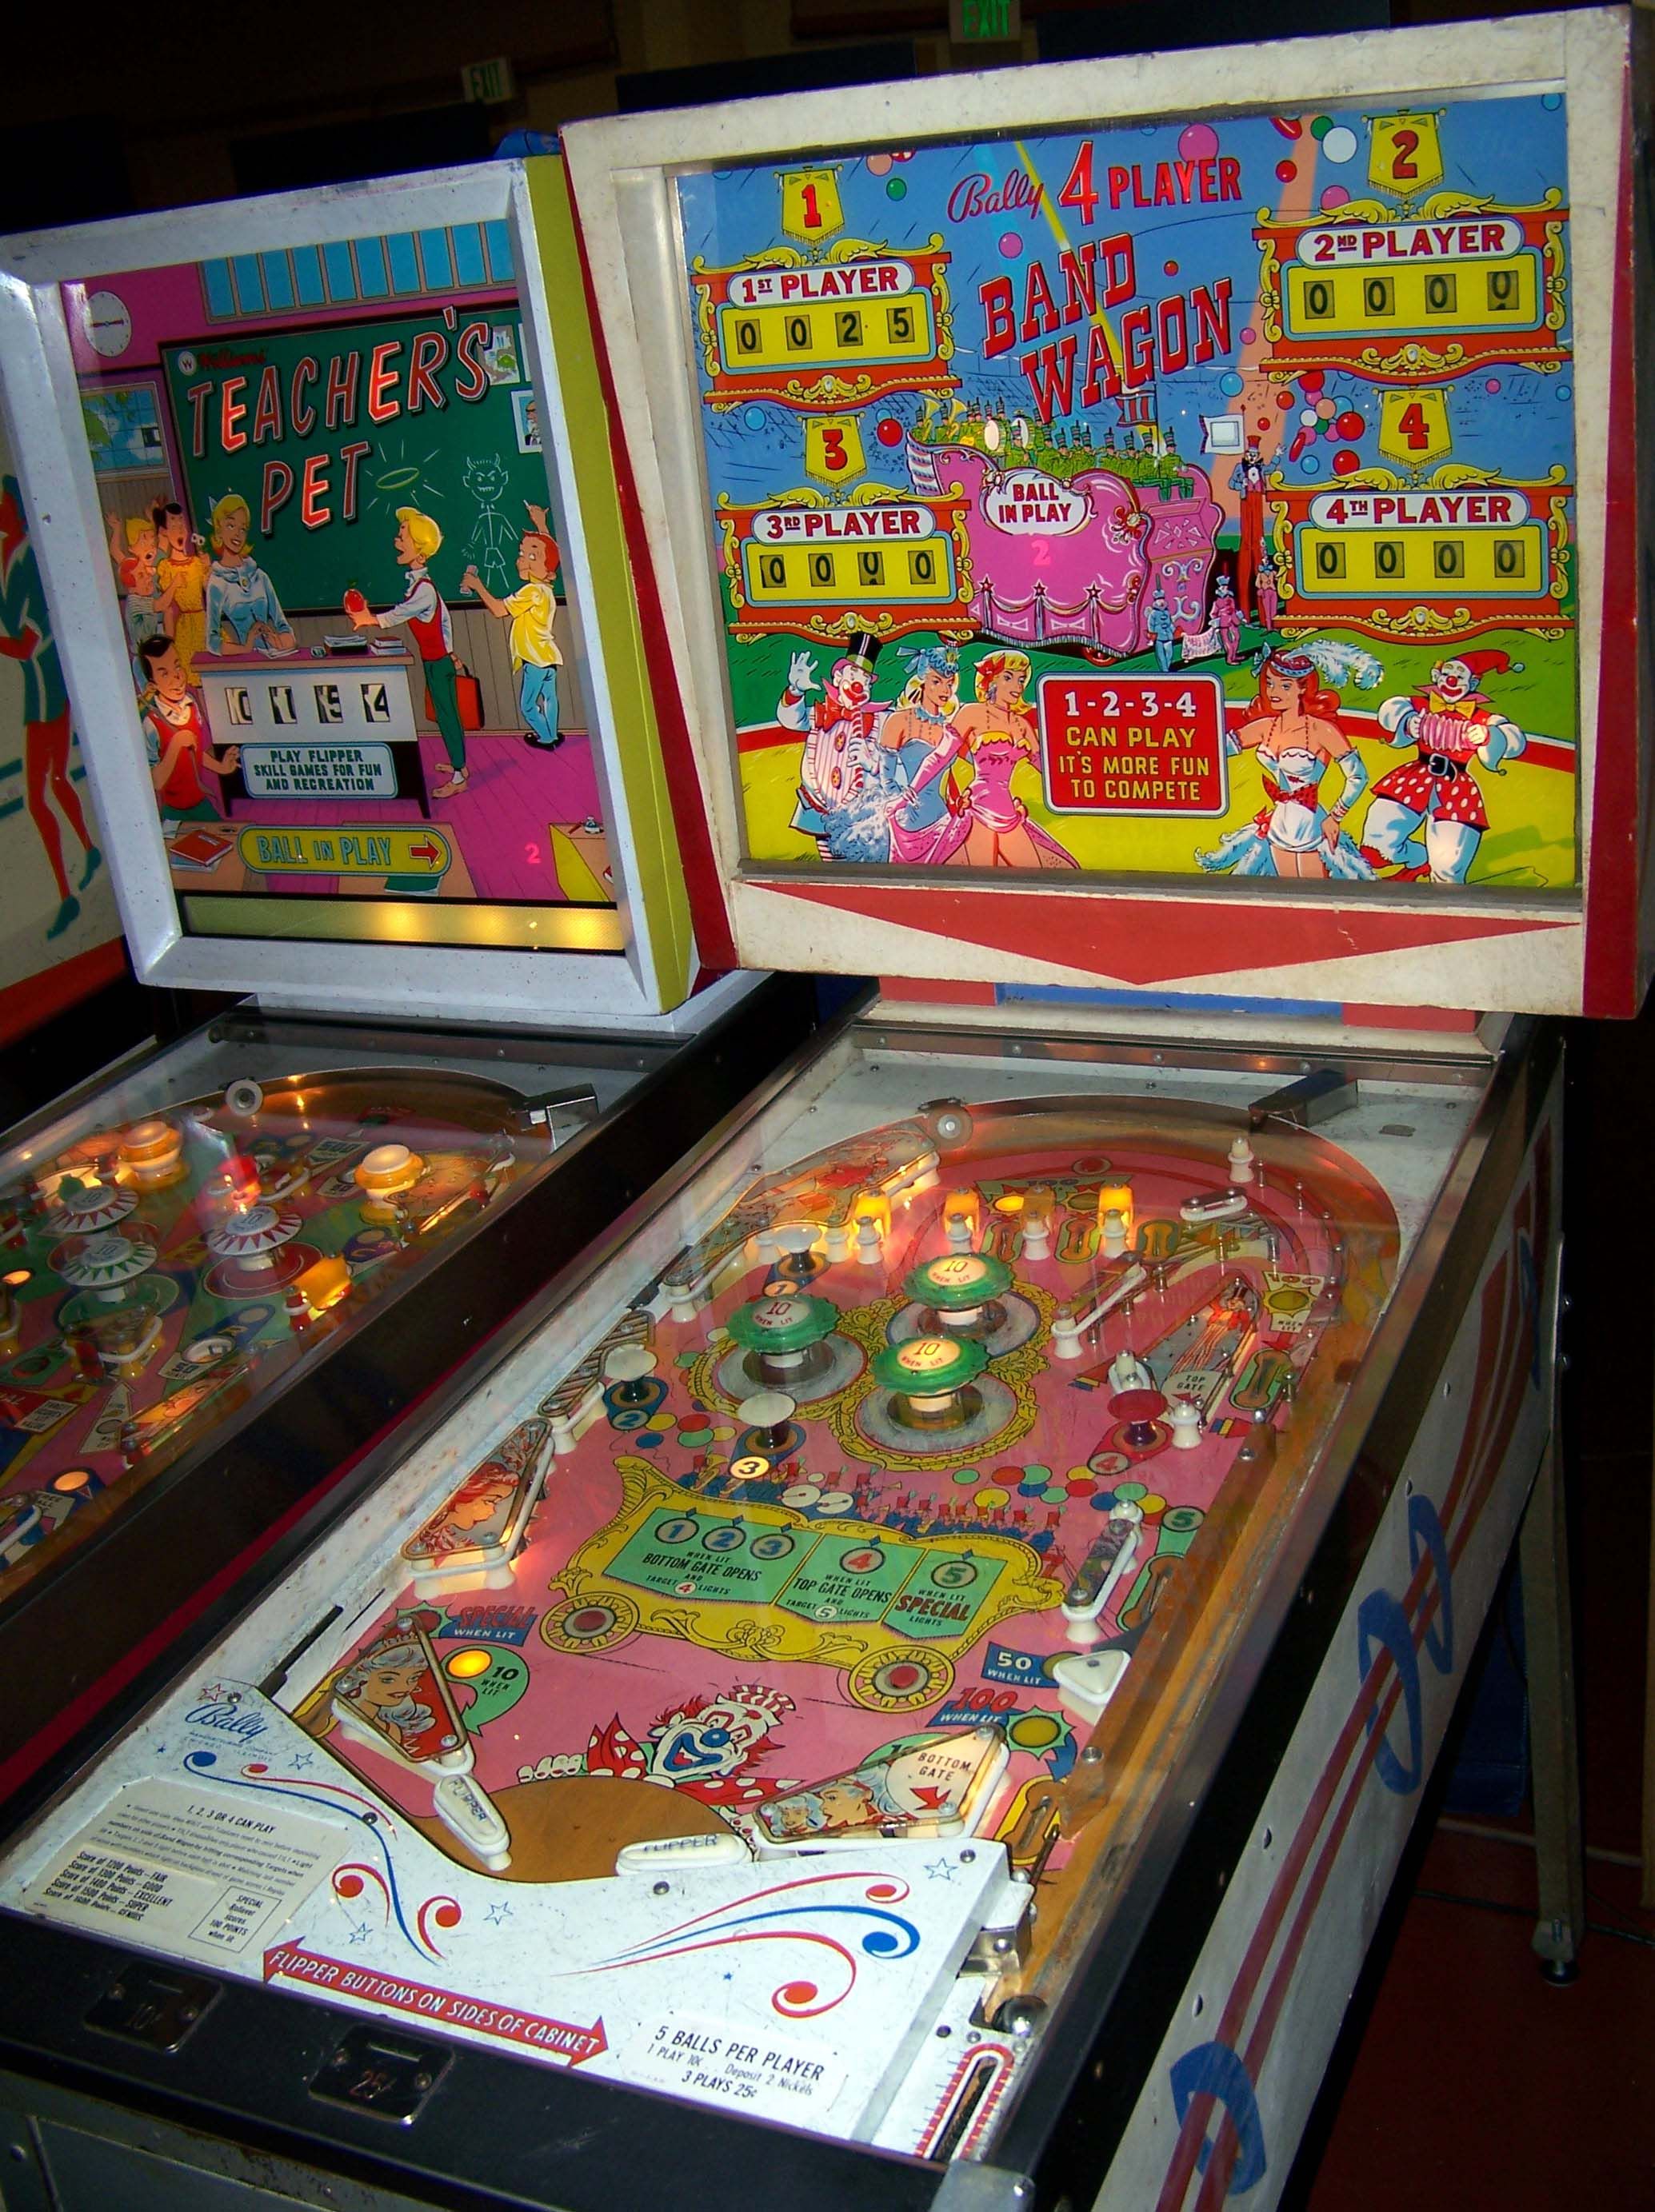 Bally slot machines juegos Pantasia com - 26169